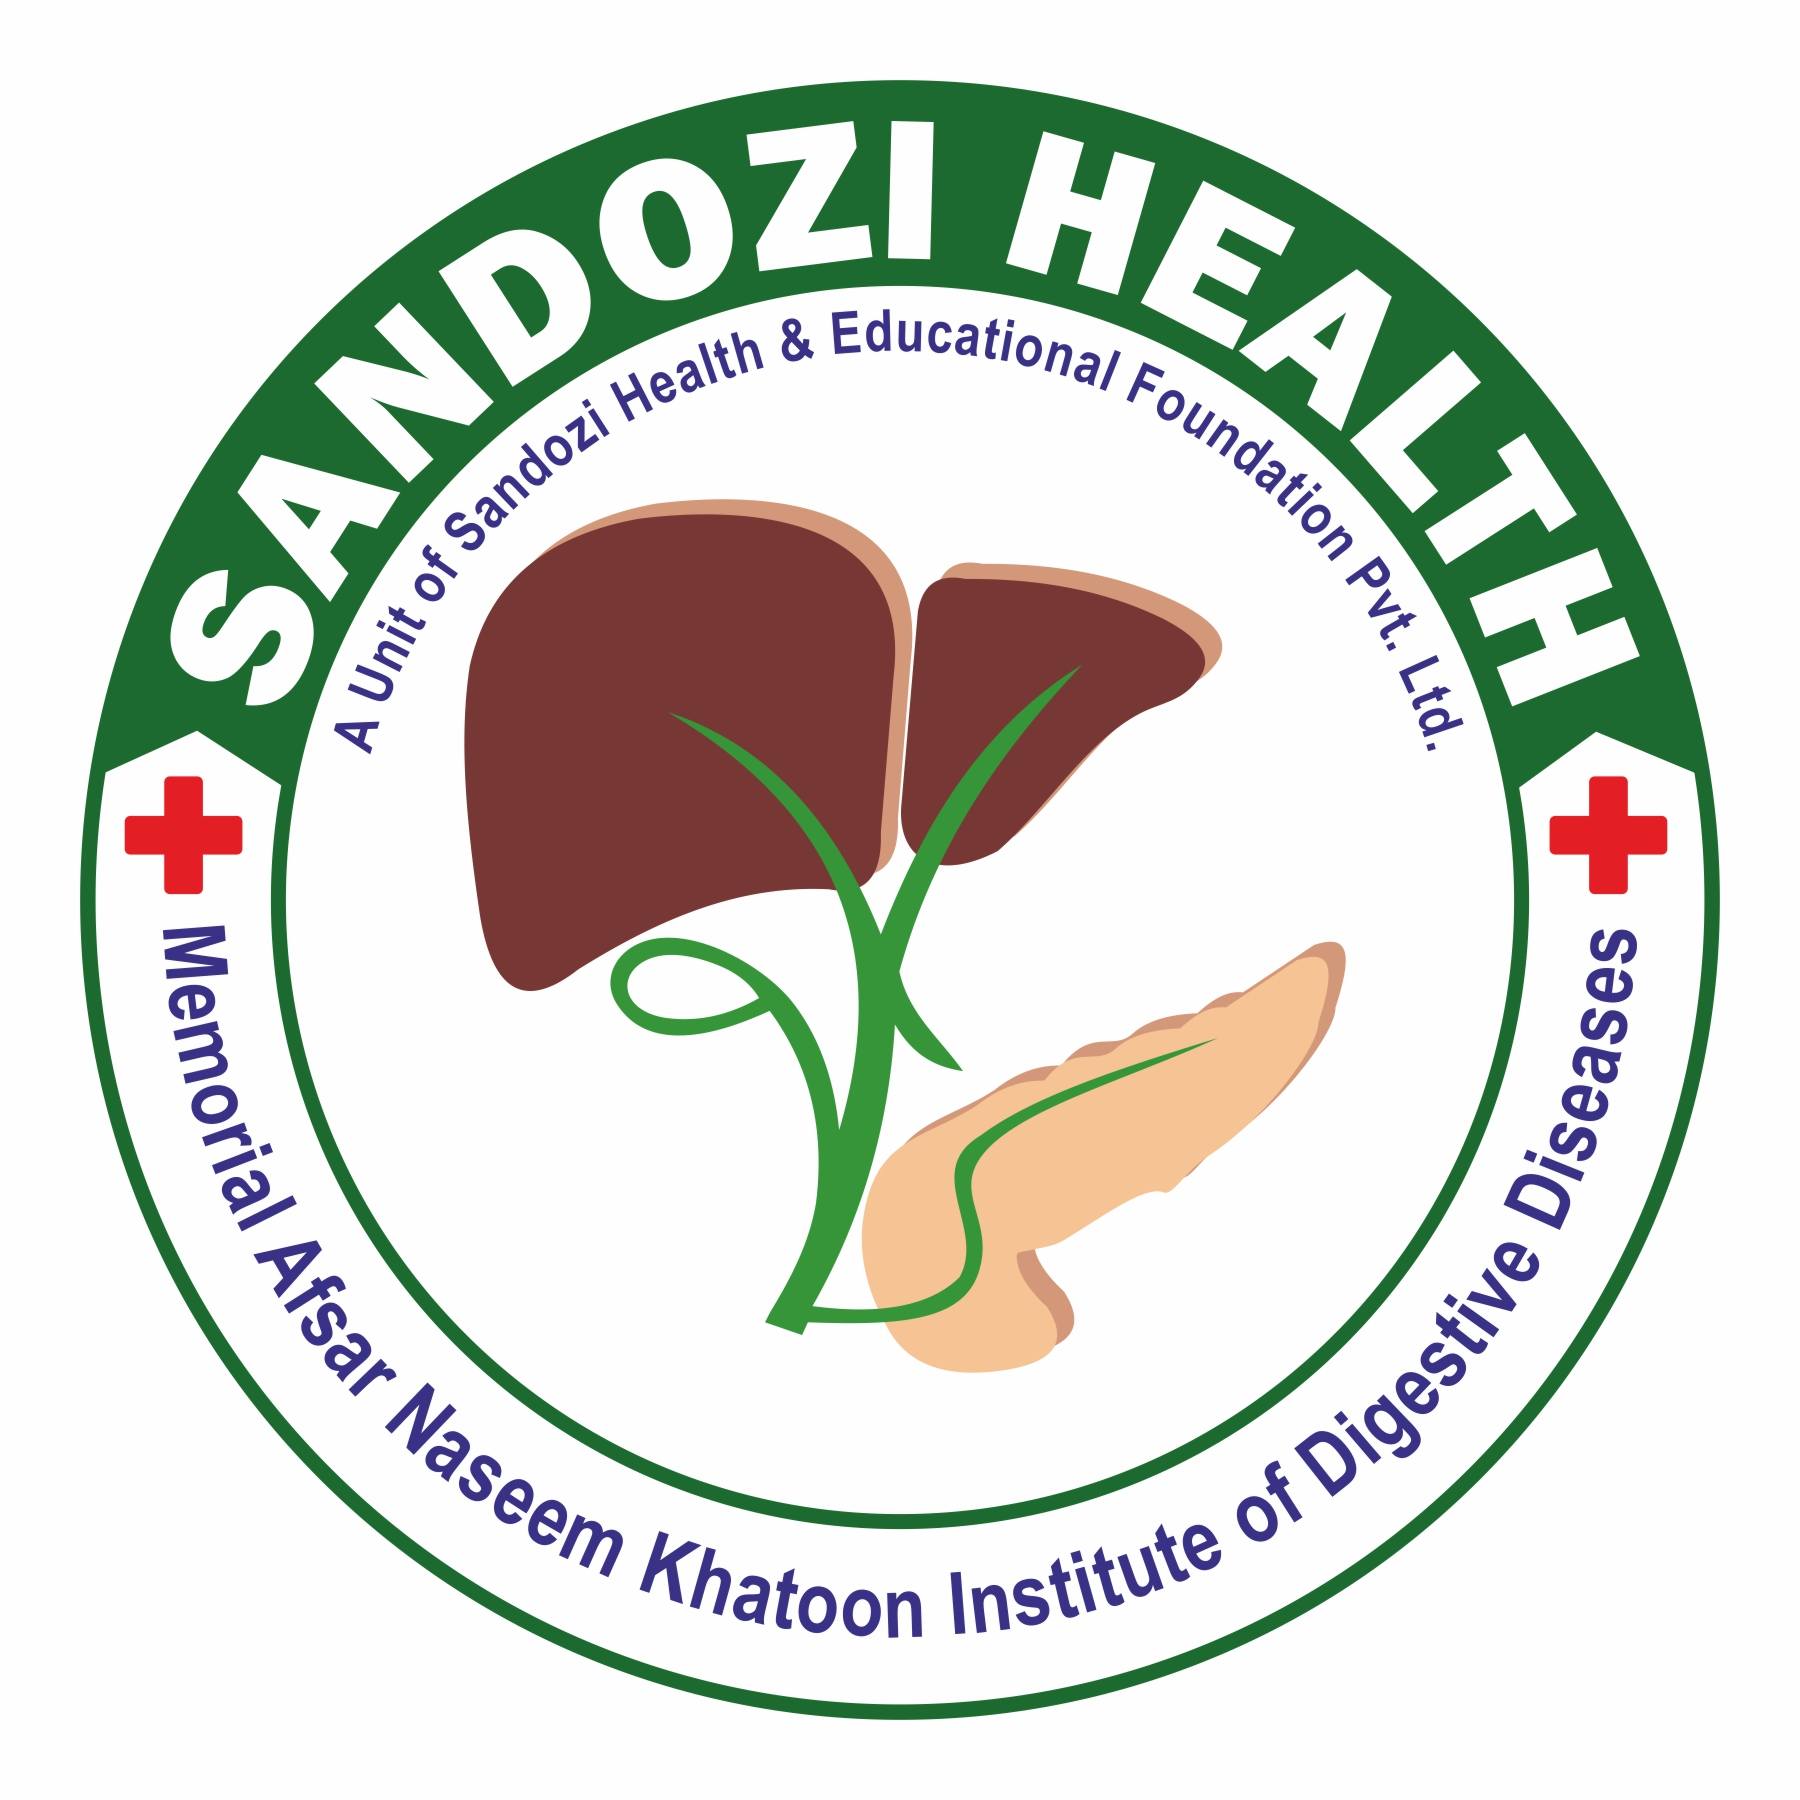 Sandozi Health